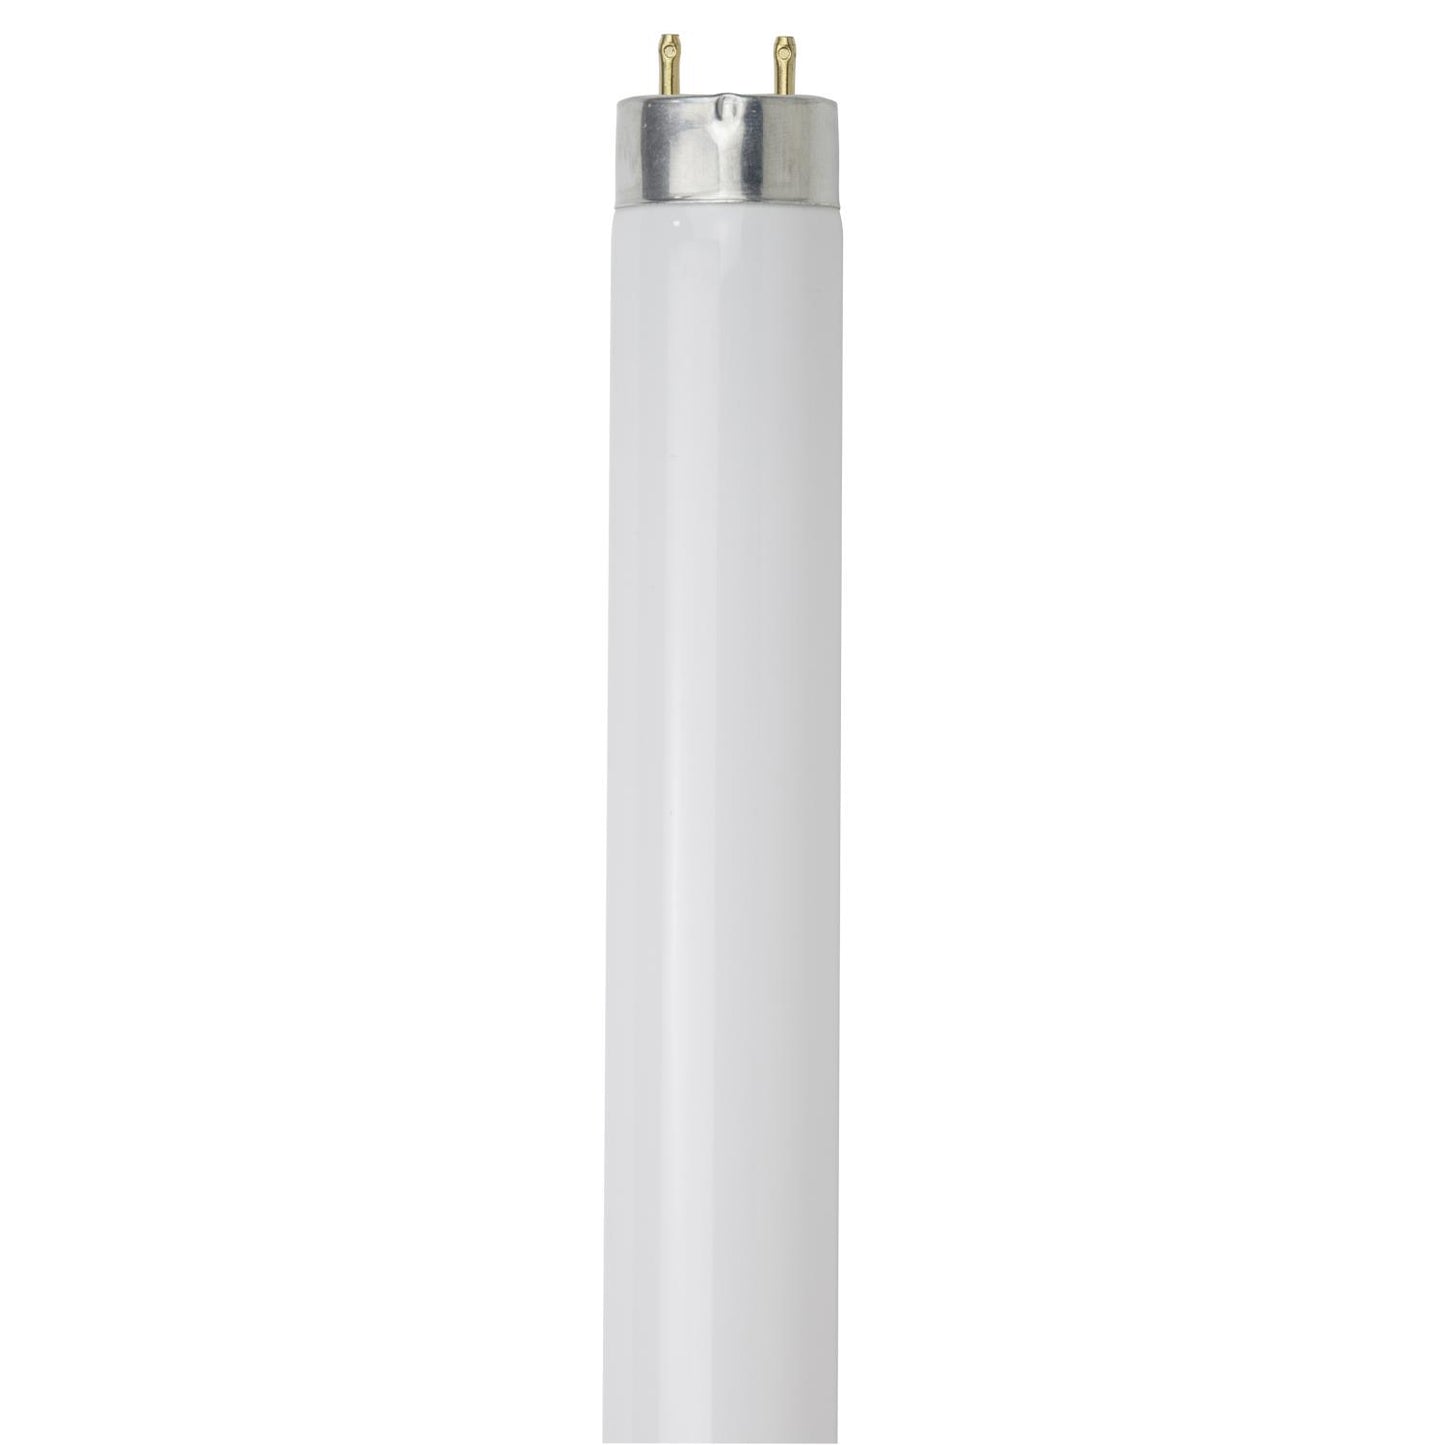 Sunlite F17T8/SP850/30PK 17 Watt T8 High Performance Straight Tube Medium Bi-Pin (G13) Base, 5000K Soft White